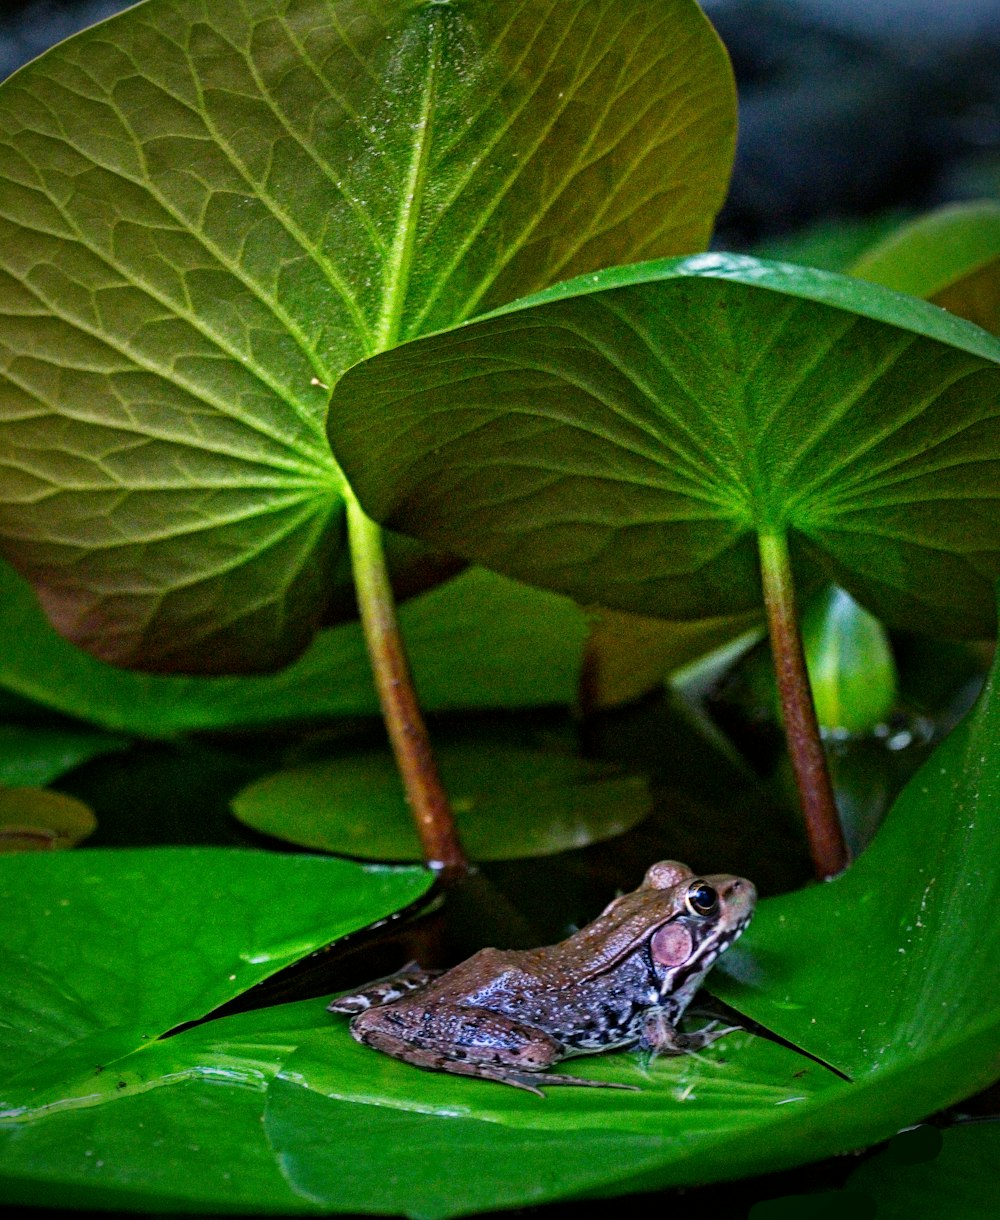 녹색 잎에 녹색 개구리